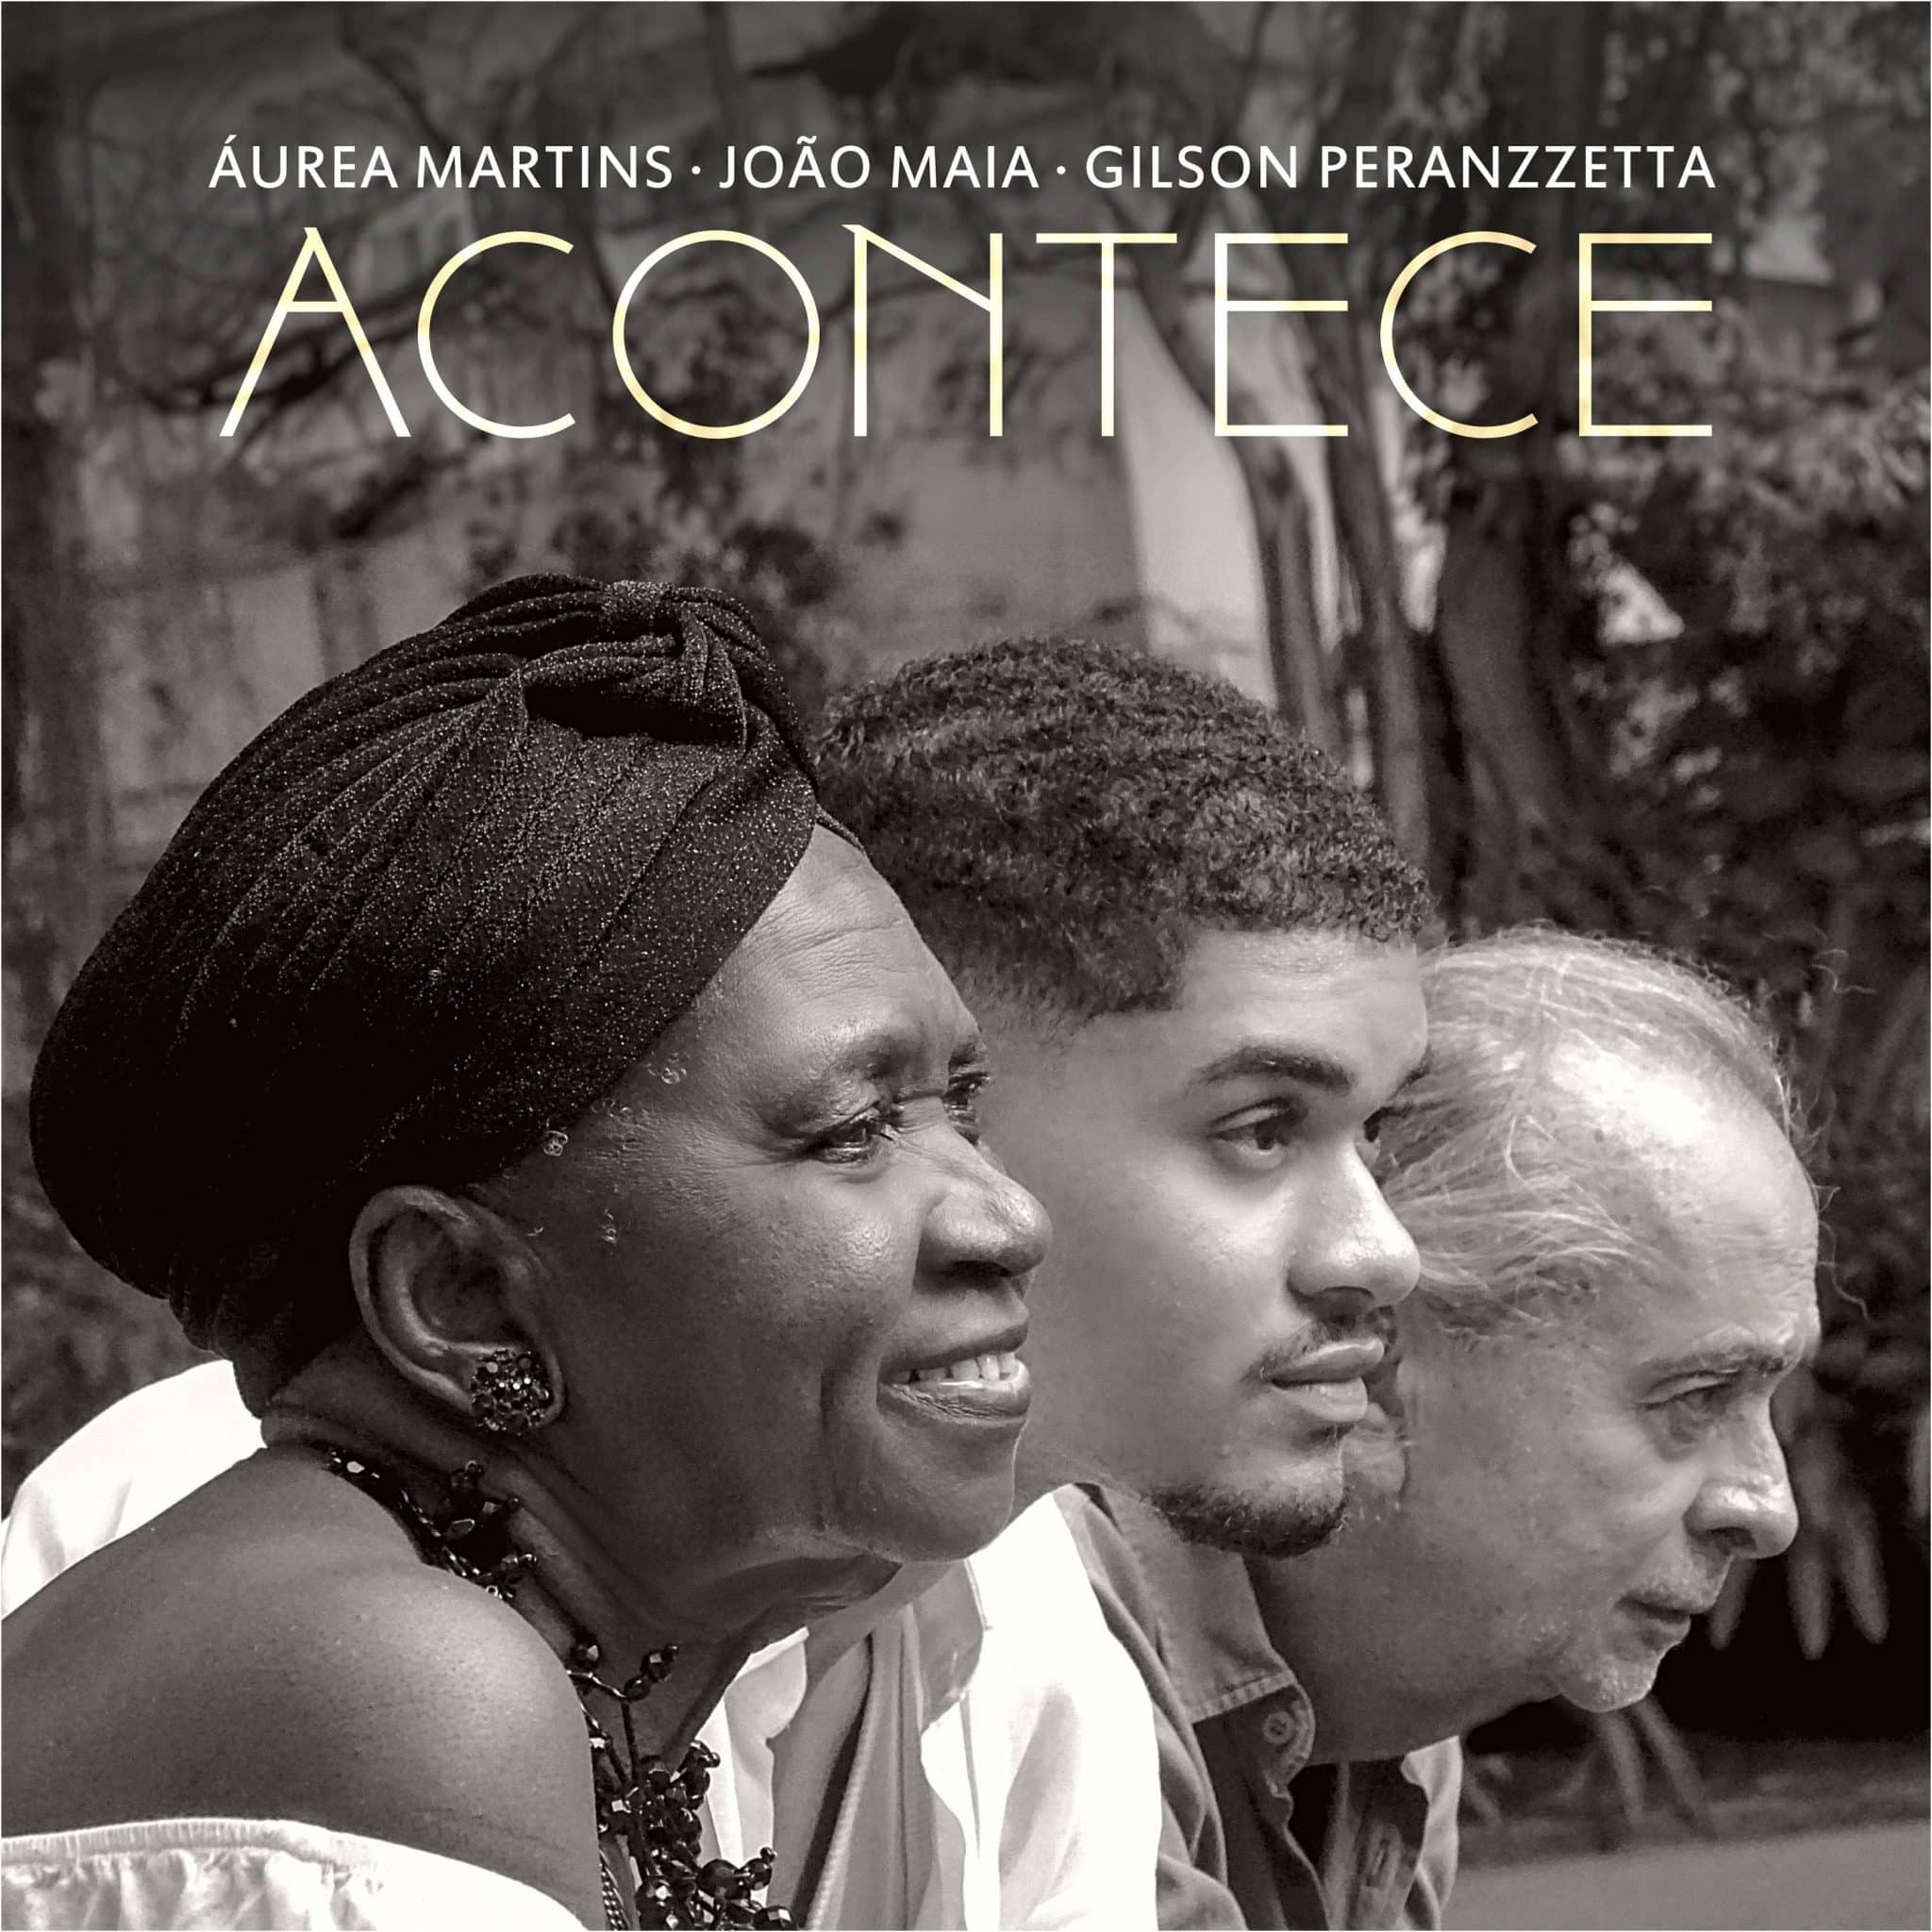 revistaprosaversoearte.com - 'Acontece', clássico de Cartola ganha releitura com Aurea Martins, João Maia e Gilson Peranzzetta